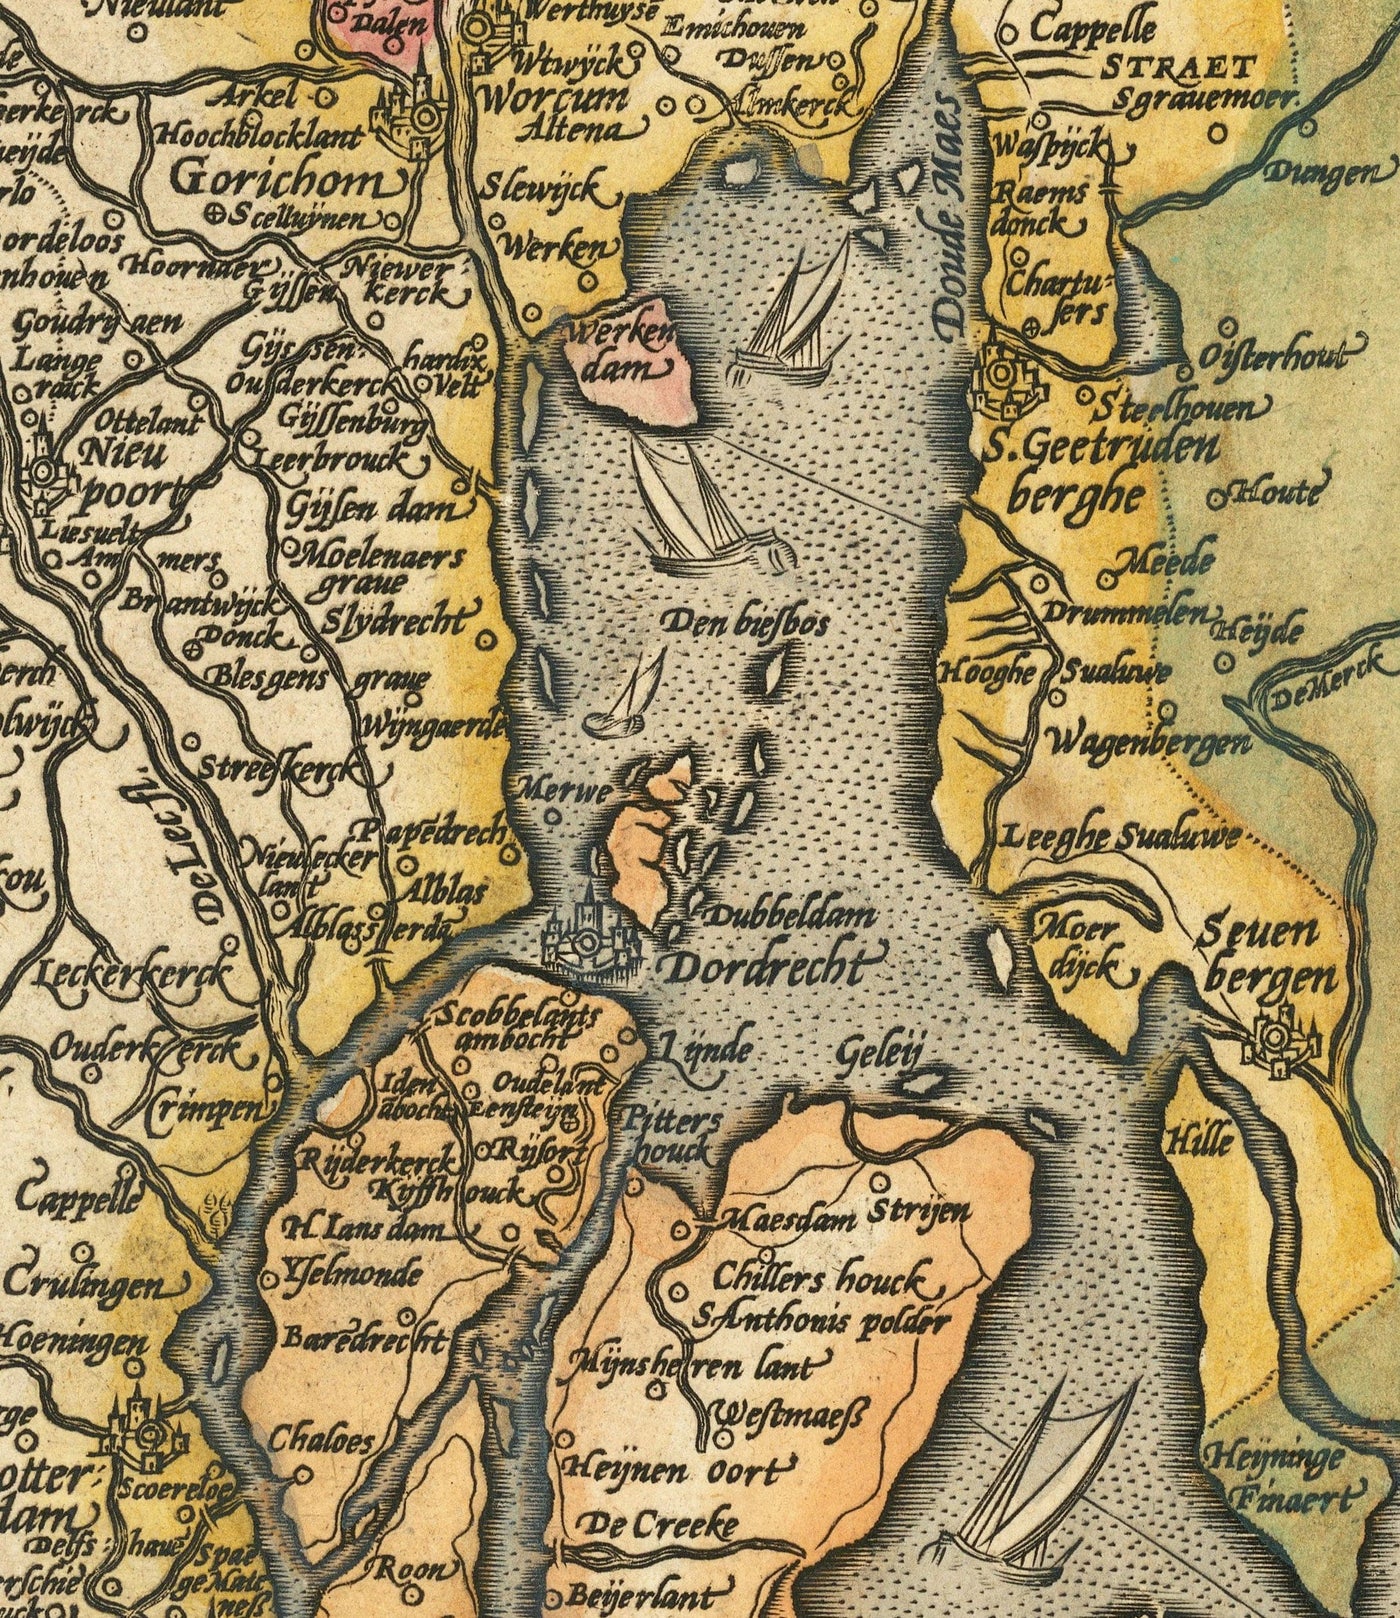 Alte Karte von Holland und Utrecht, 1595 von Abraham Ortelius - Amsterdam, Rotterdam, Haag, Utrecht